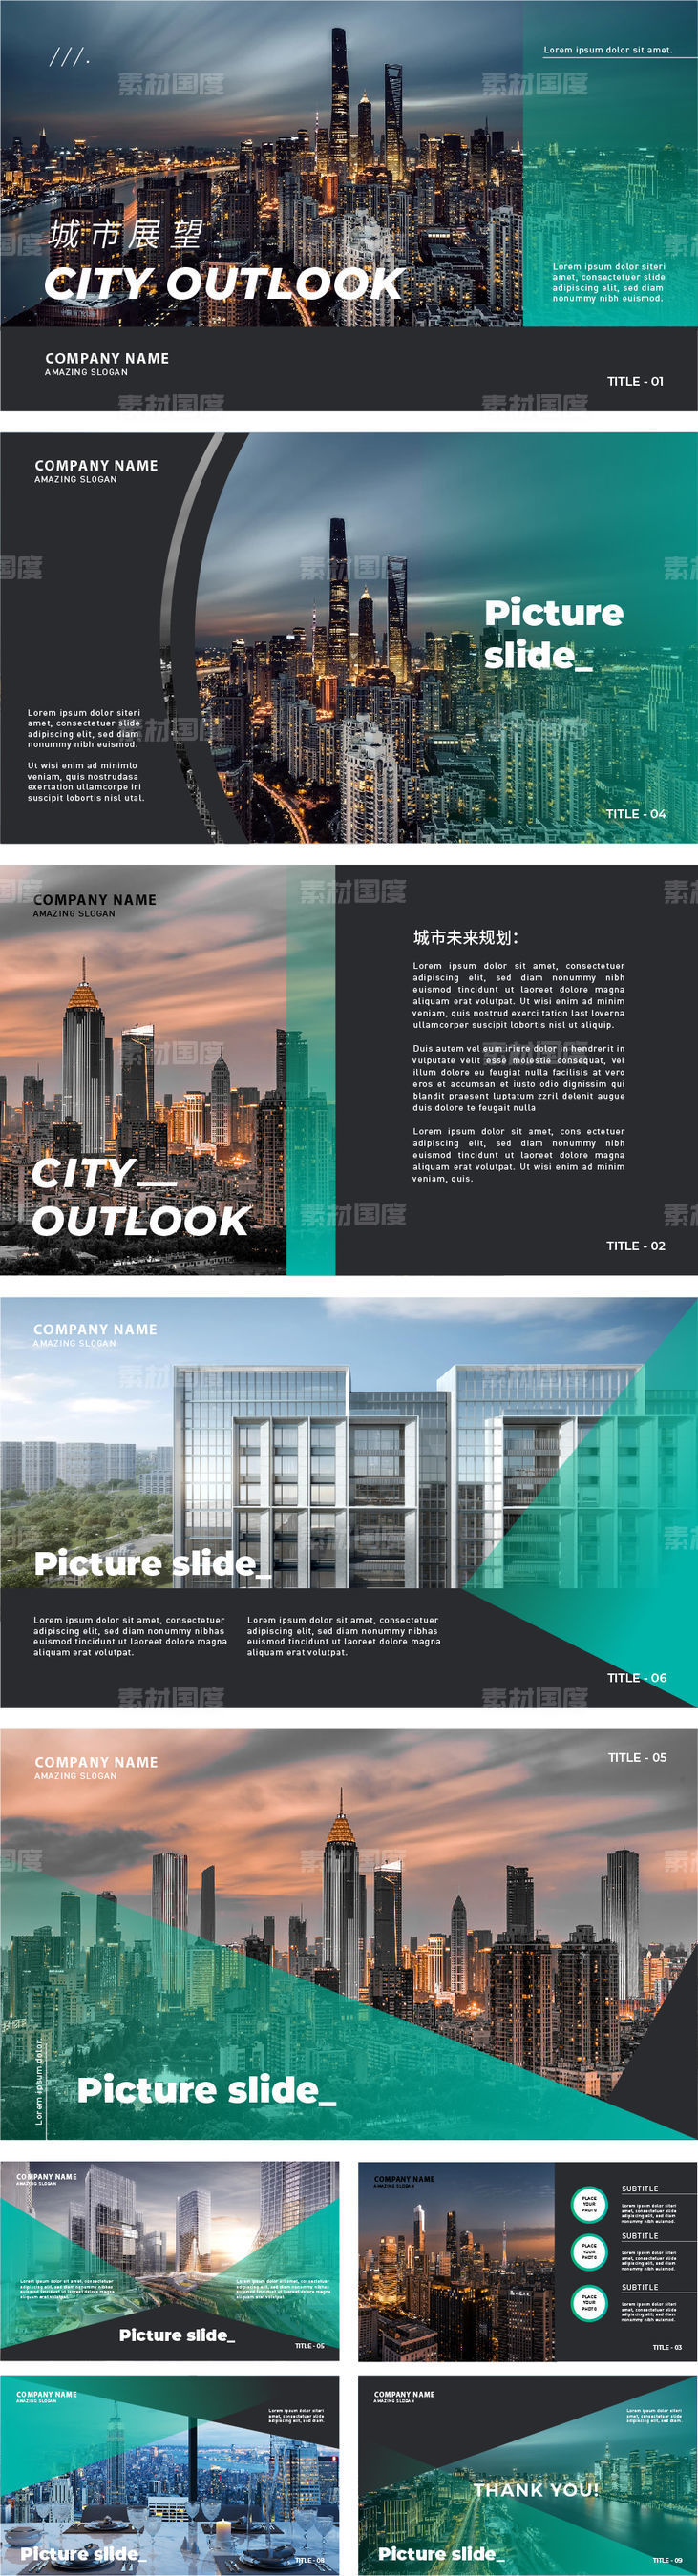 商务PPT版式黑金高端模板画册手册封面设计创意城市品质图册 